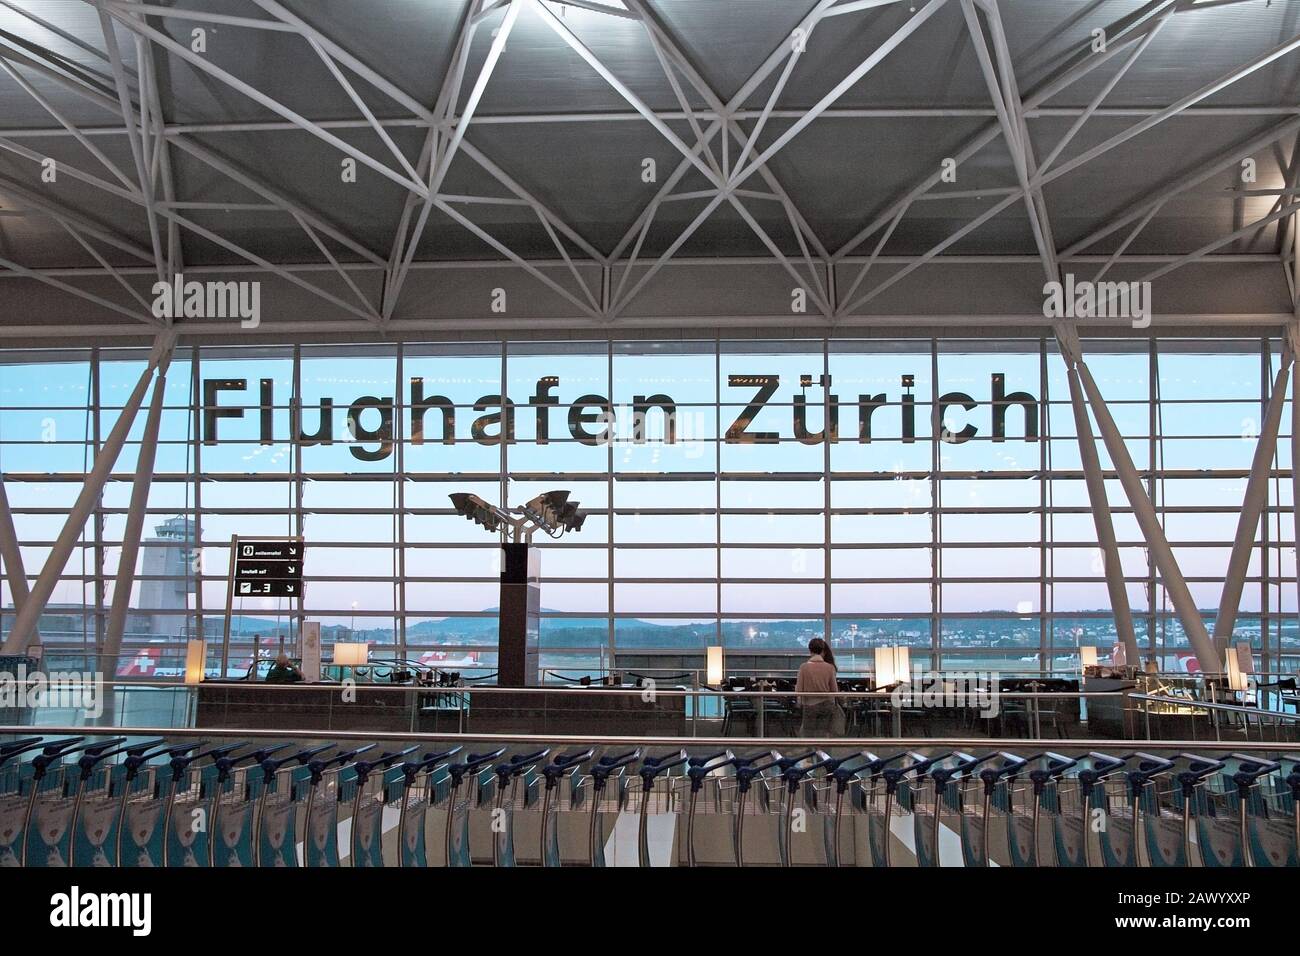 Zurich, Switzerland - June 11, 2017: Airport Zurich (Flughafen Zurich) waiting area after check-in - view towards airfield with lettering Stock Photo